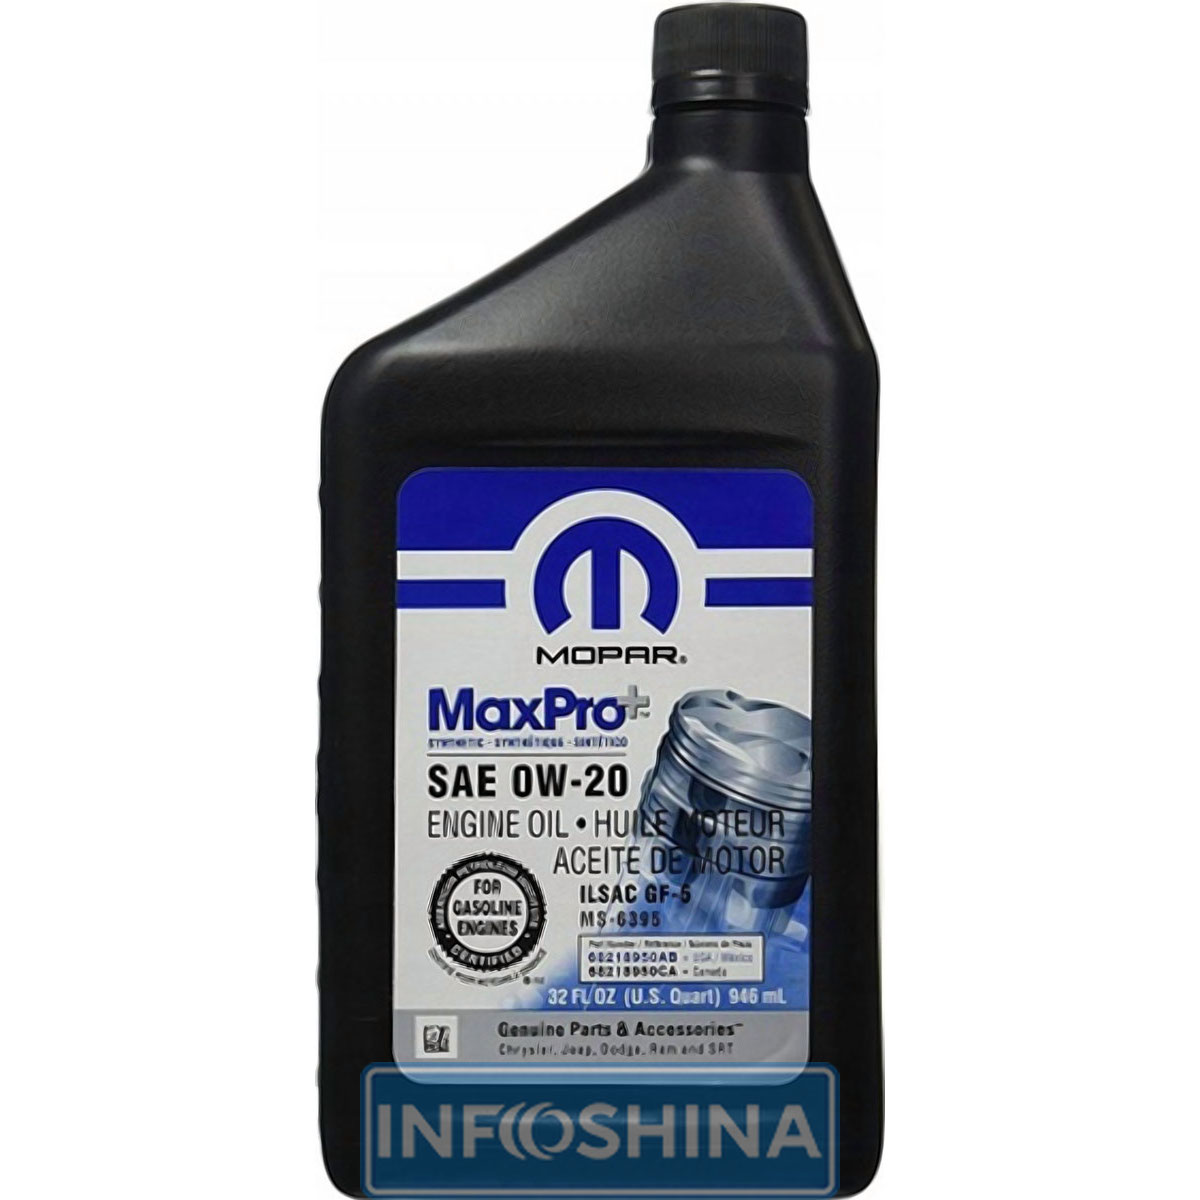 Купить масло MOPAR MaxPro+ Engine Oil